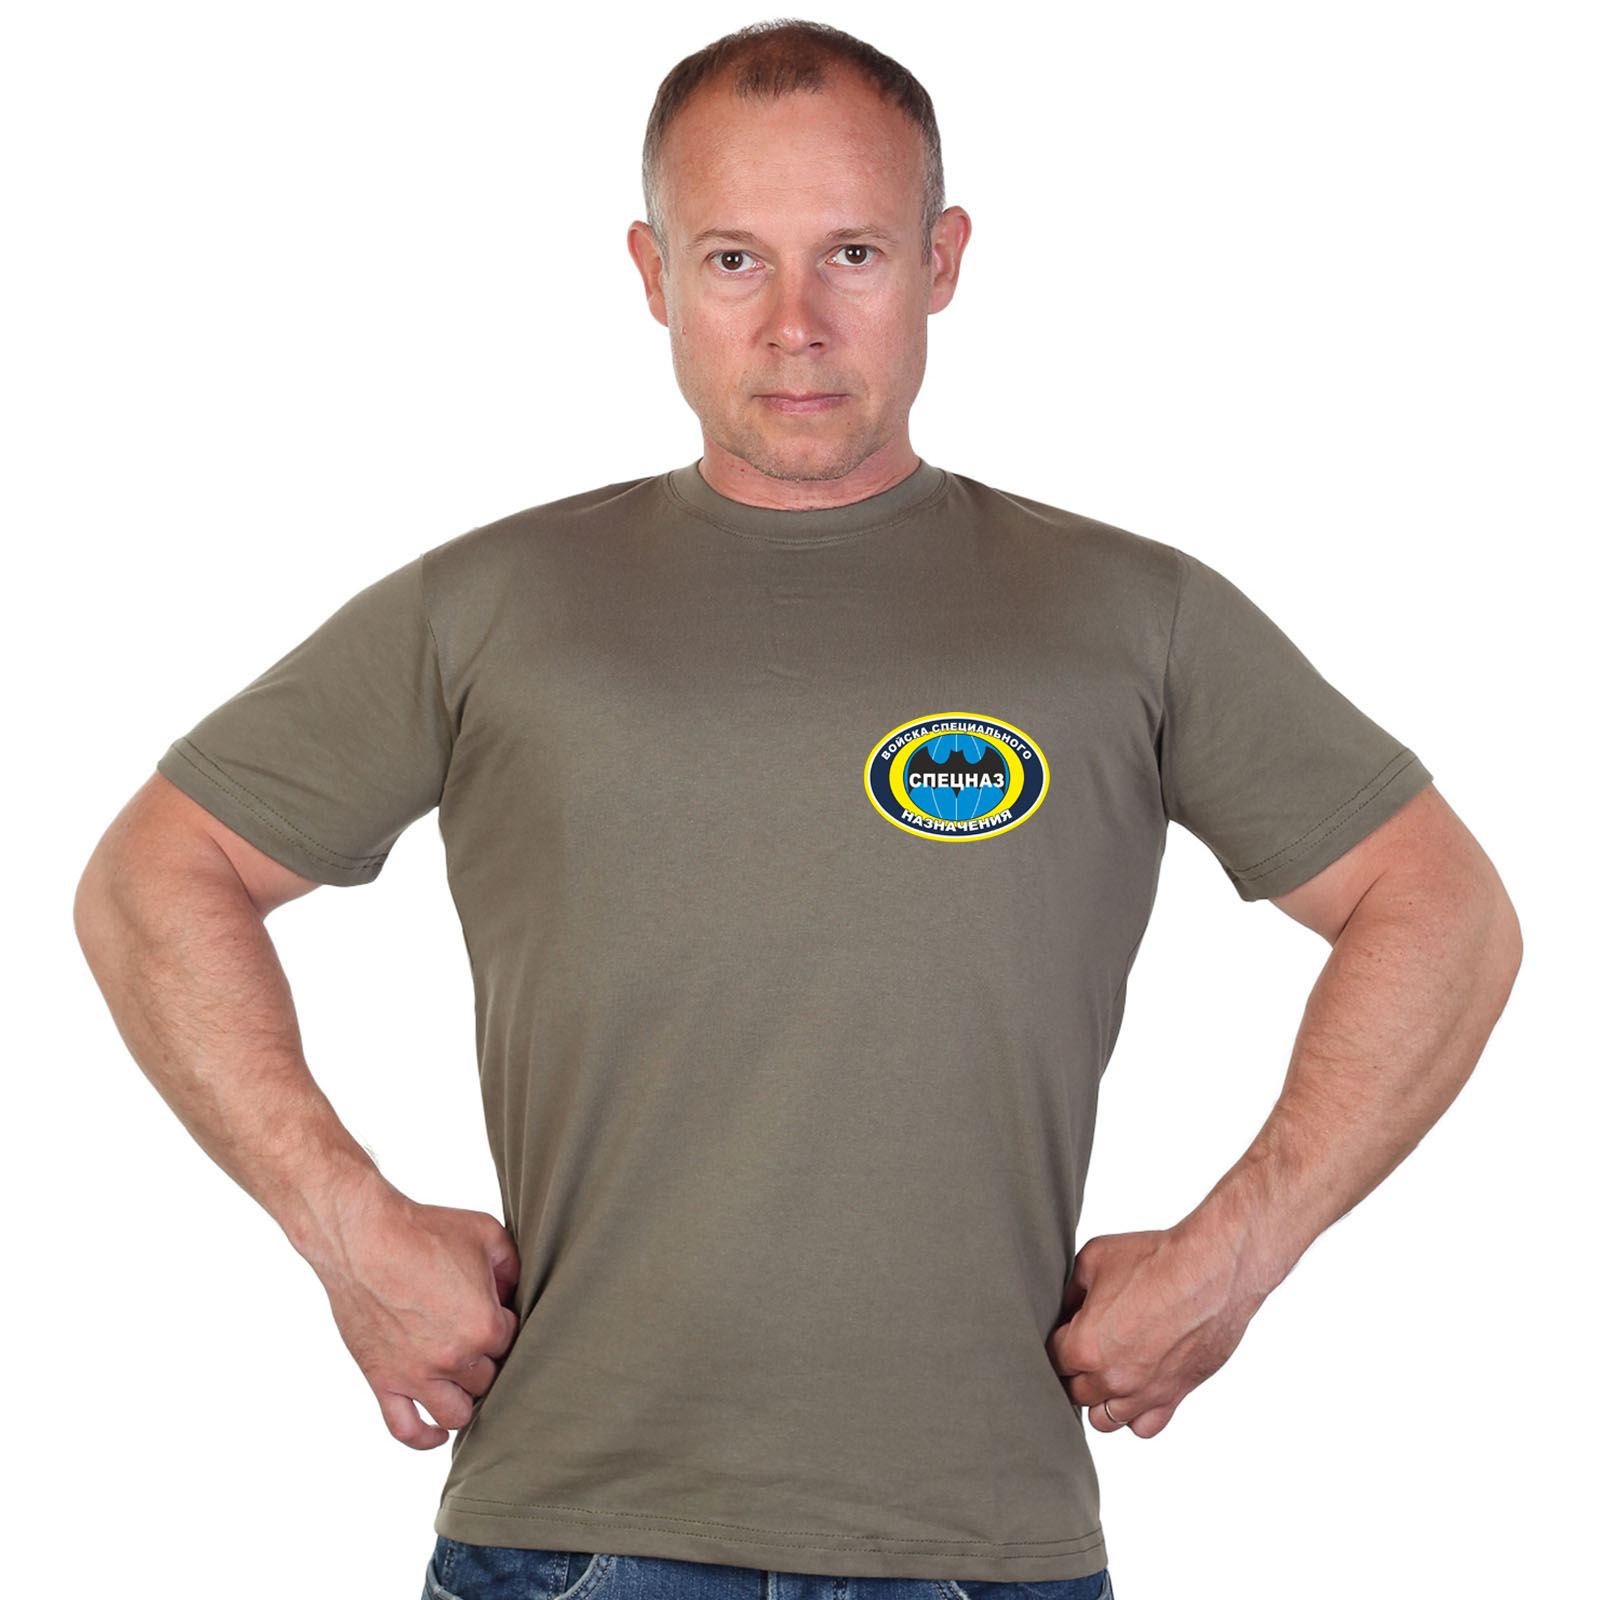 Оливковая футболка с термотрансфером "Спецназ" 